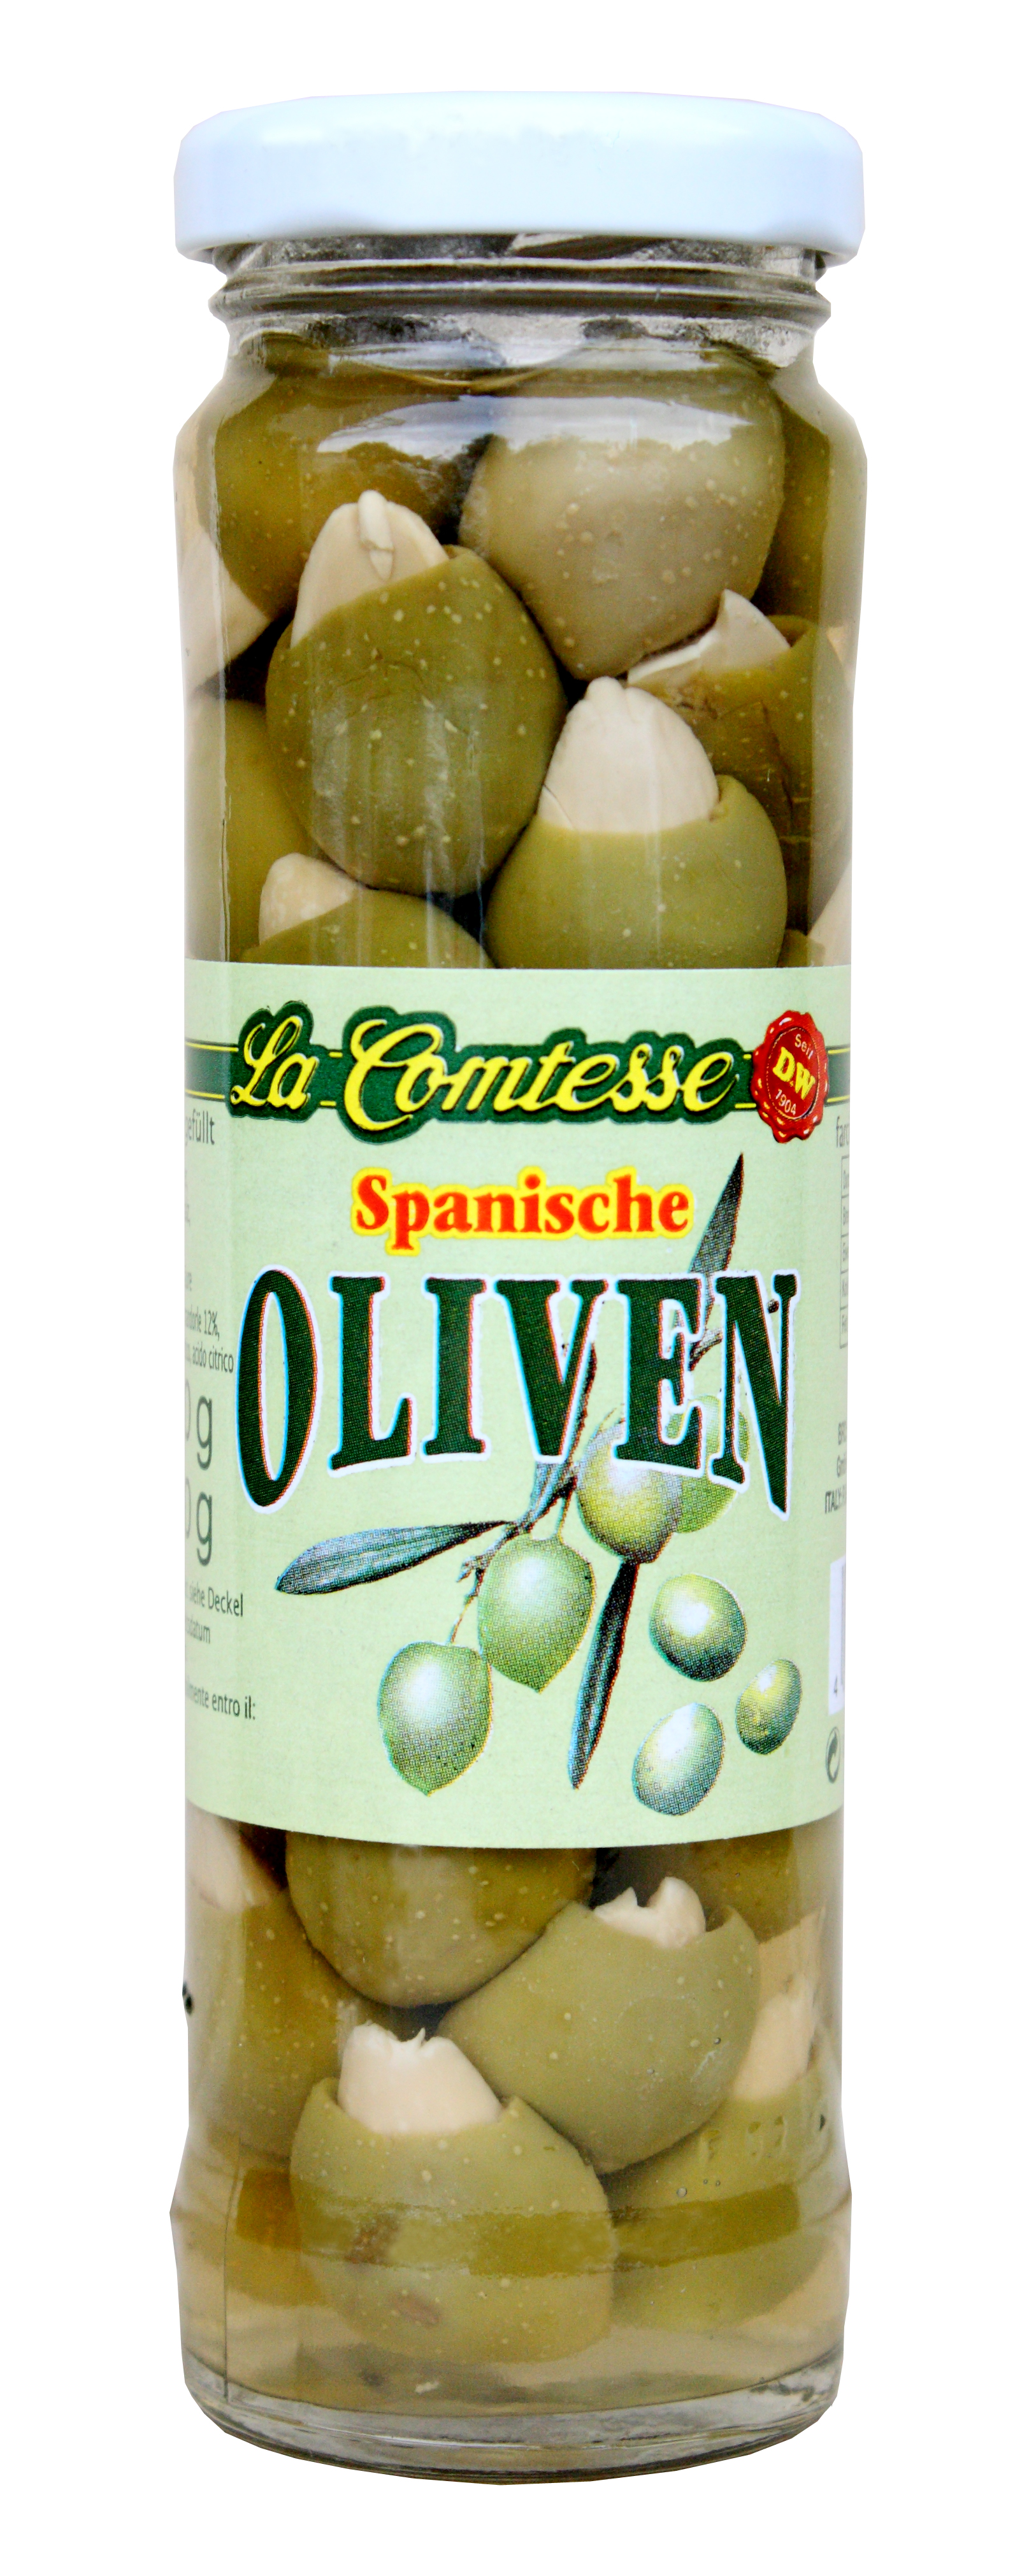 Grüne Oliven mit Mandeln, handpack, 140 g